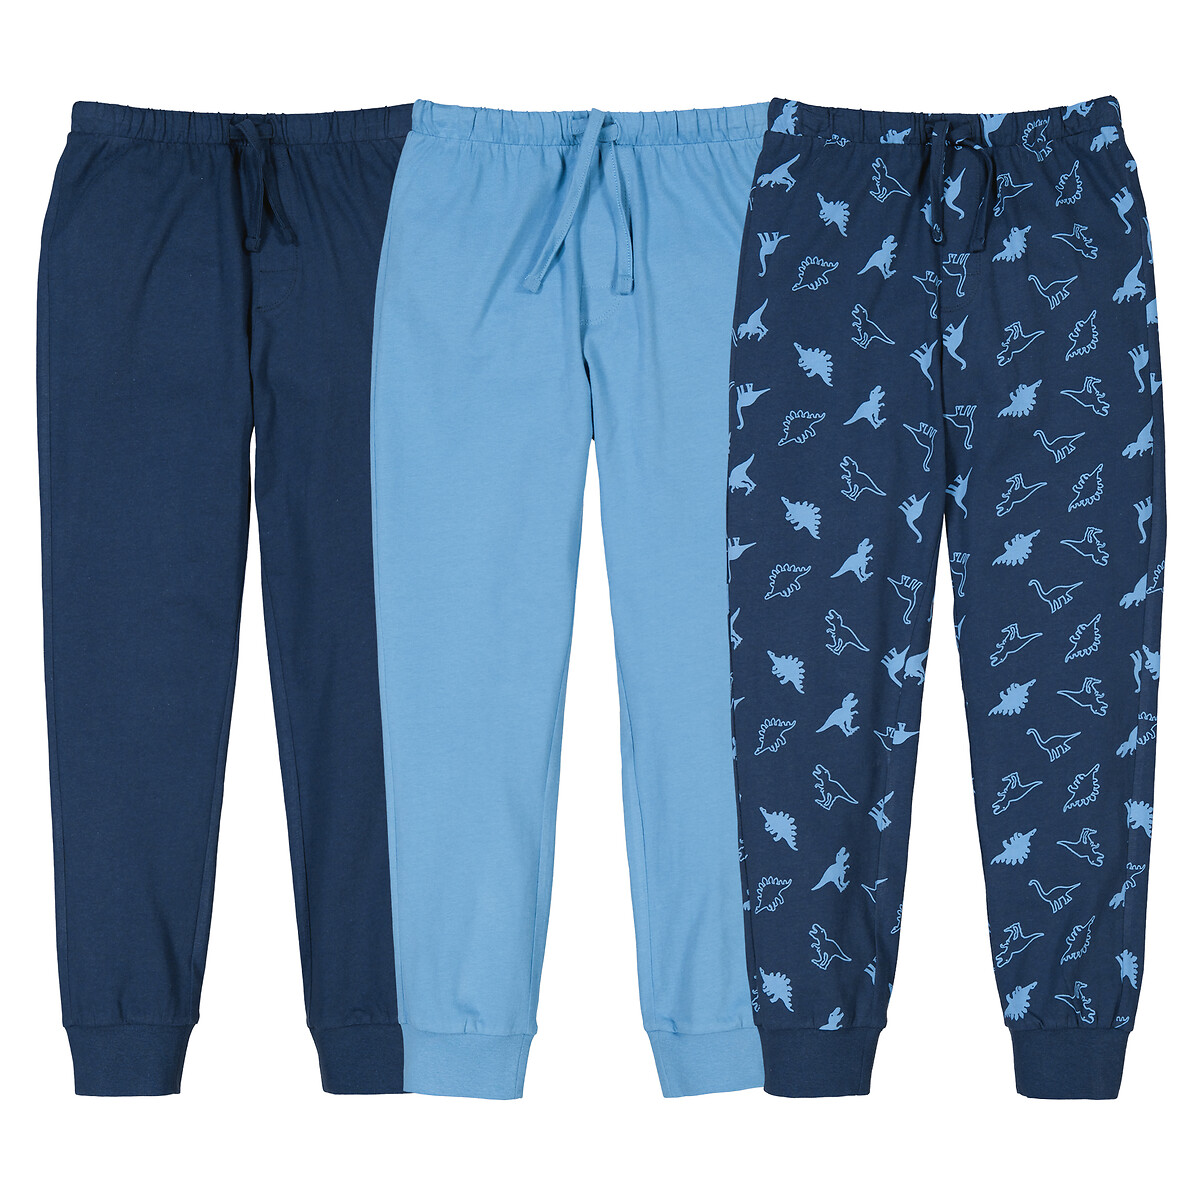 Комплект из трех пижамных брюк La Redoute 3 года - 94 см синий комплект из трех футболок la redoute 3 года 94 см синий